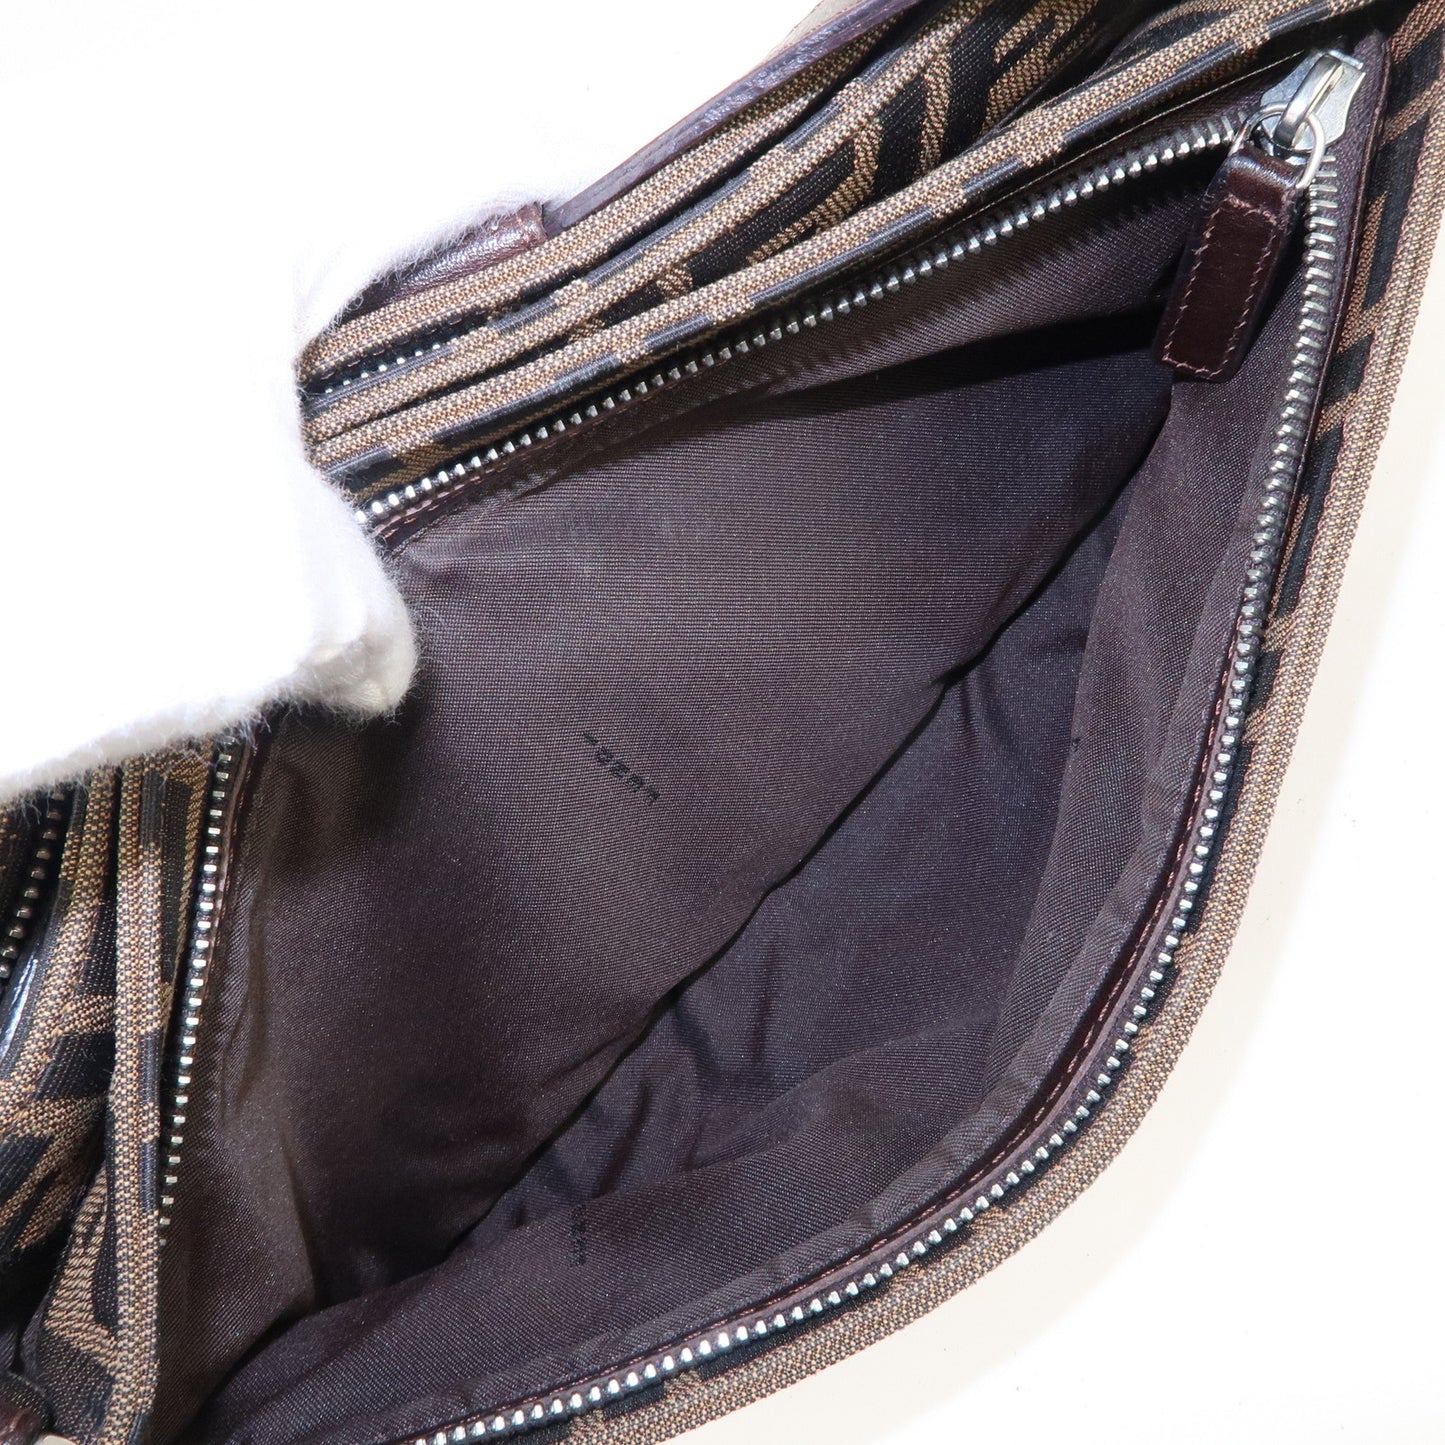 FENDI Zucca Canvas Leather Shoulder Bag Black Brown 26722